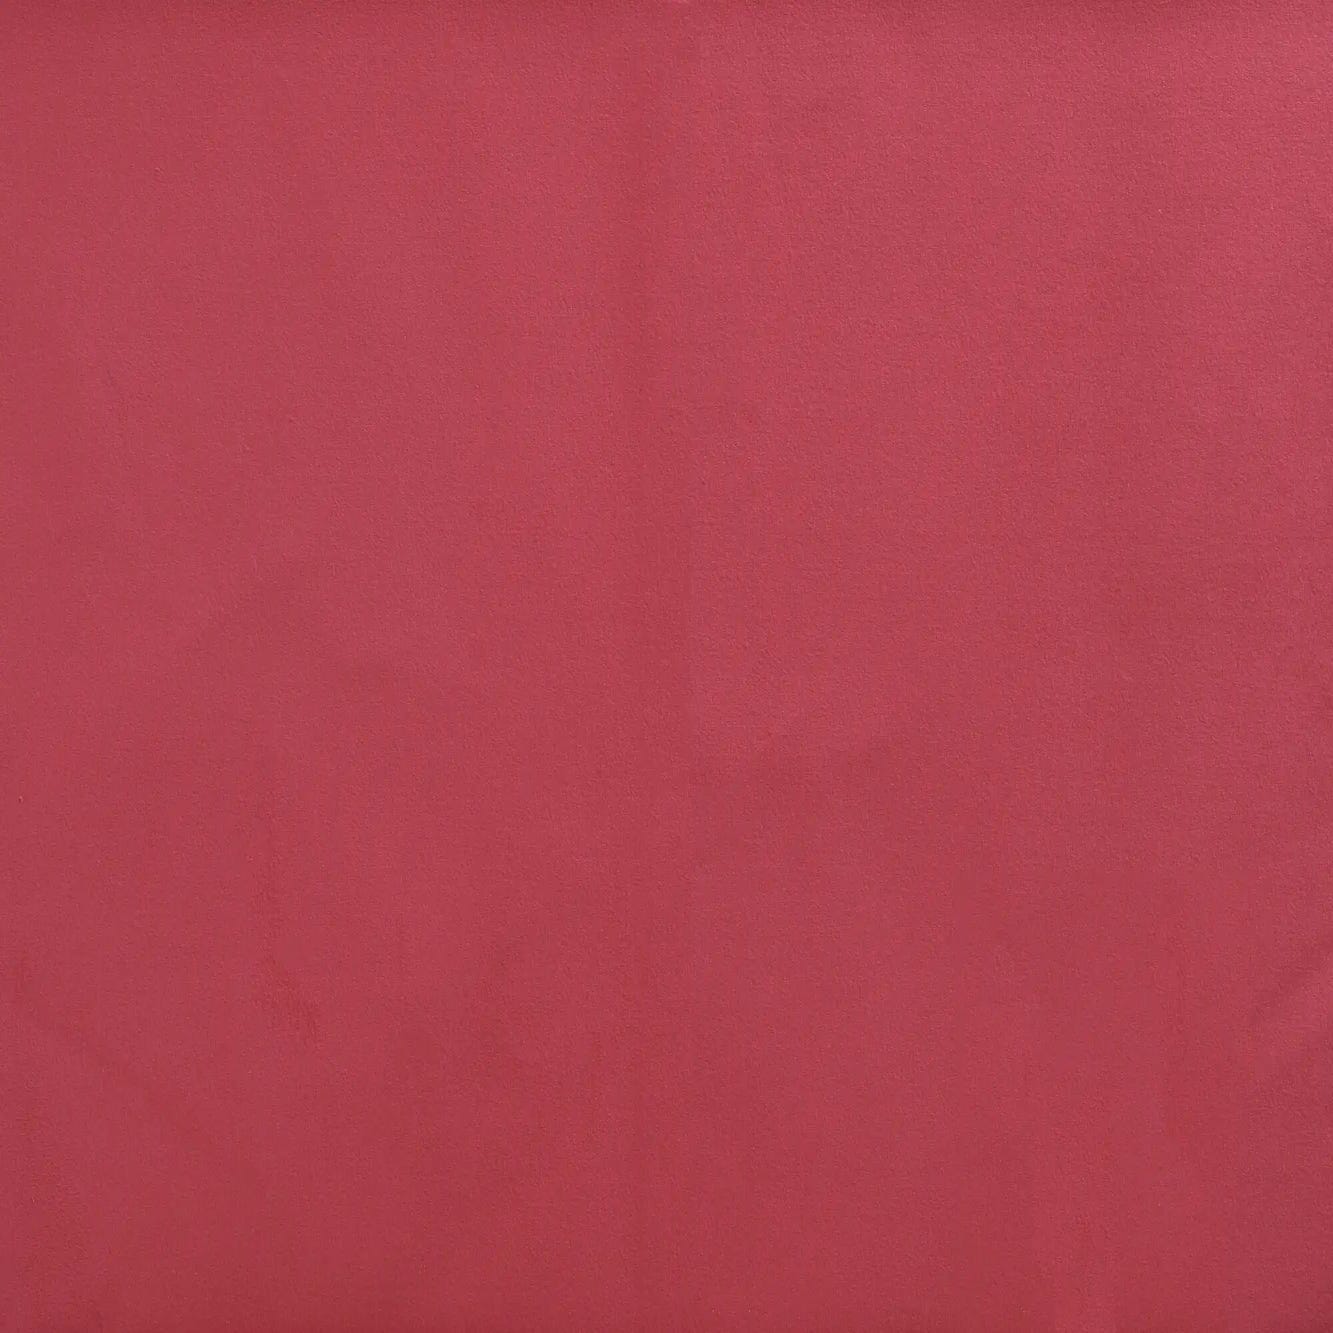 Tela al corte tapicería terciopelo rojo ancho 140 cm